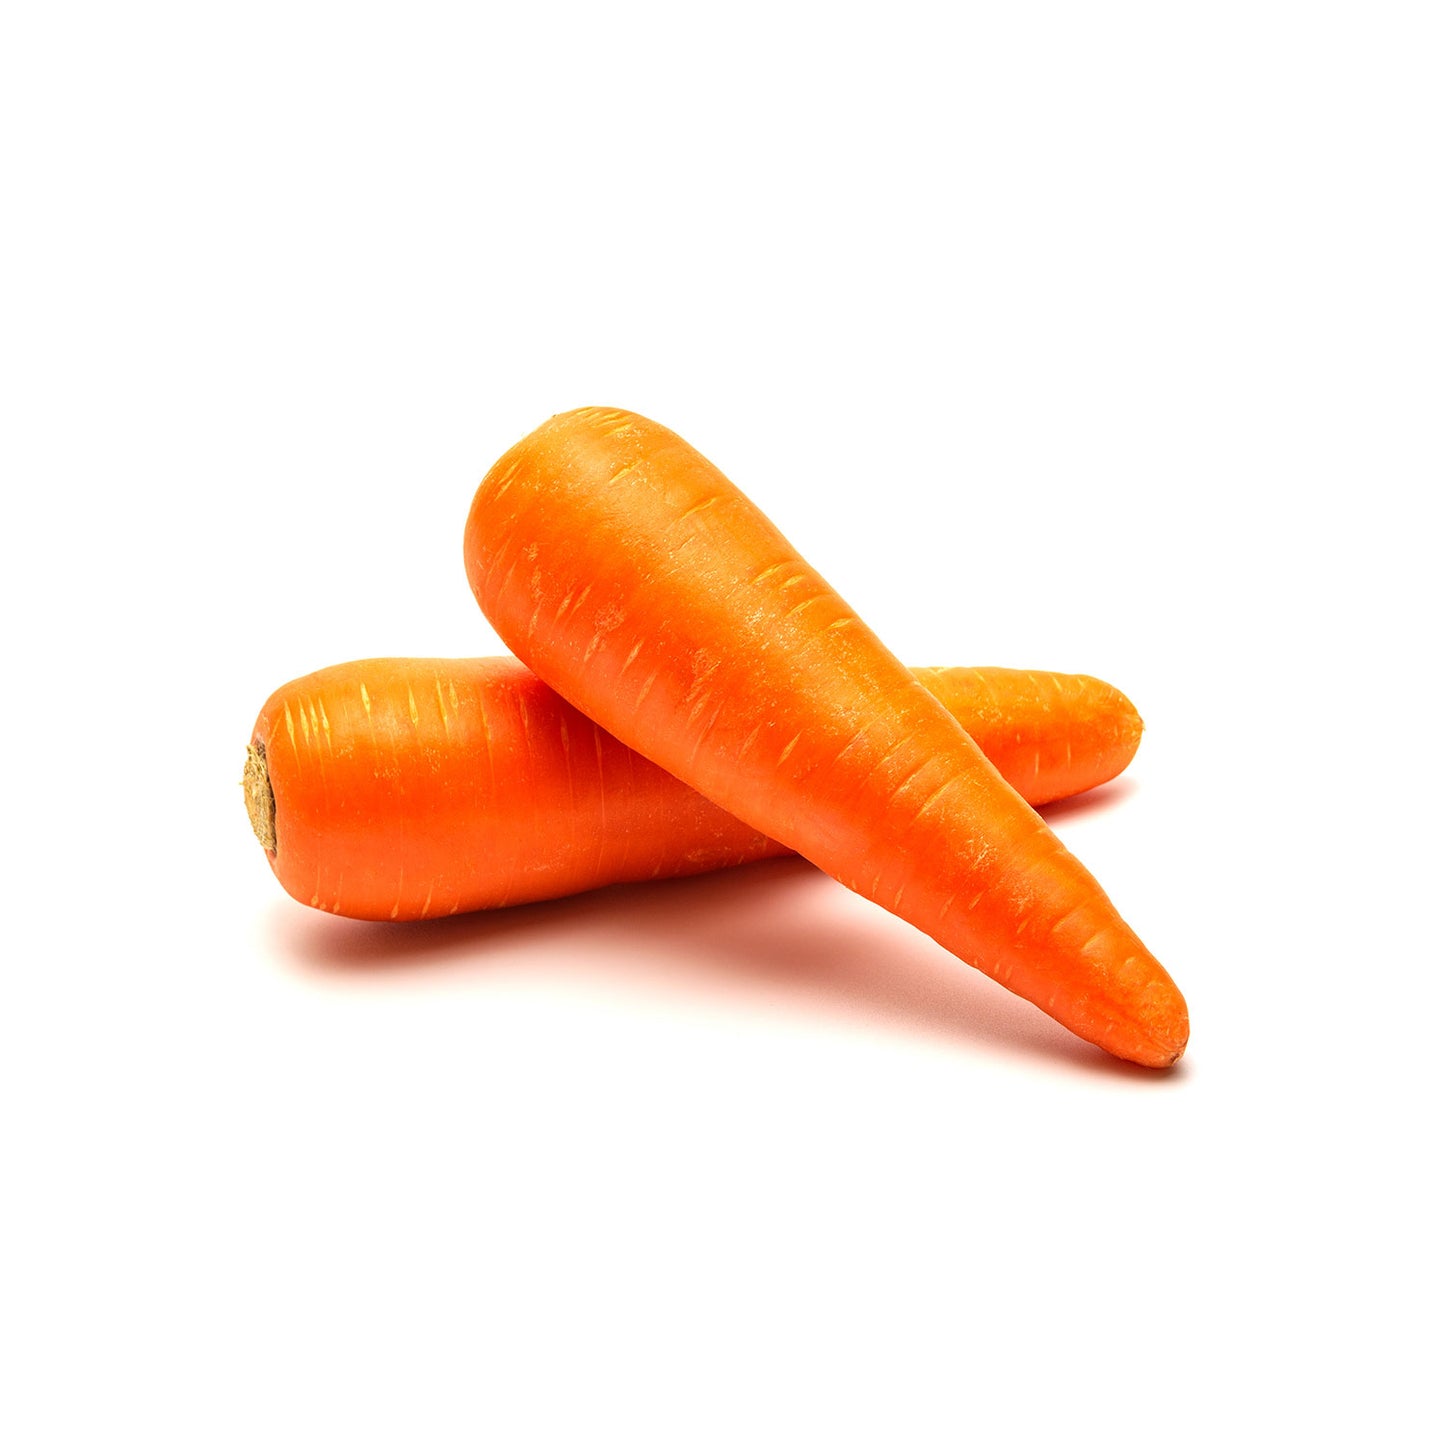 Carrots / 1 lb